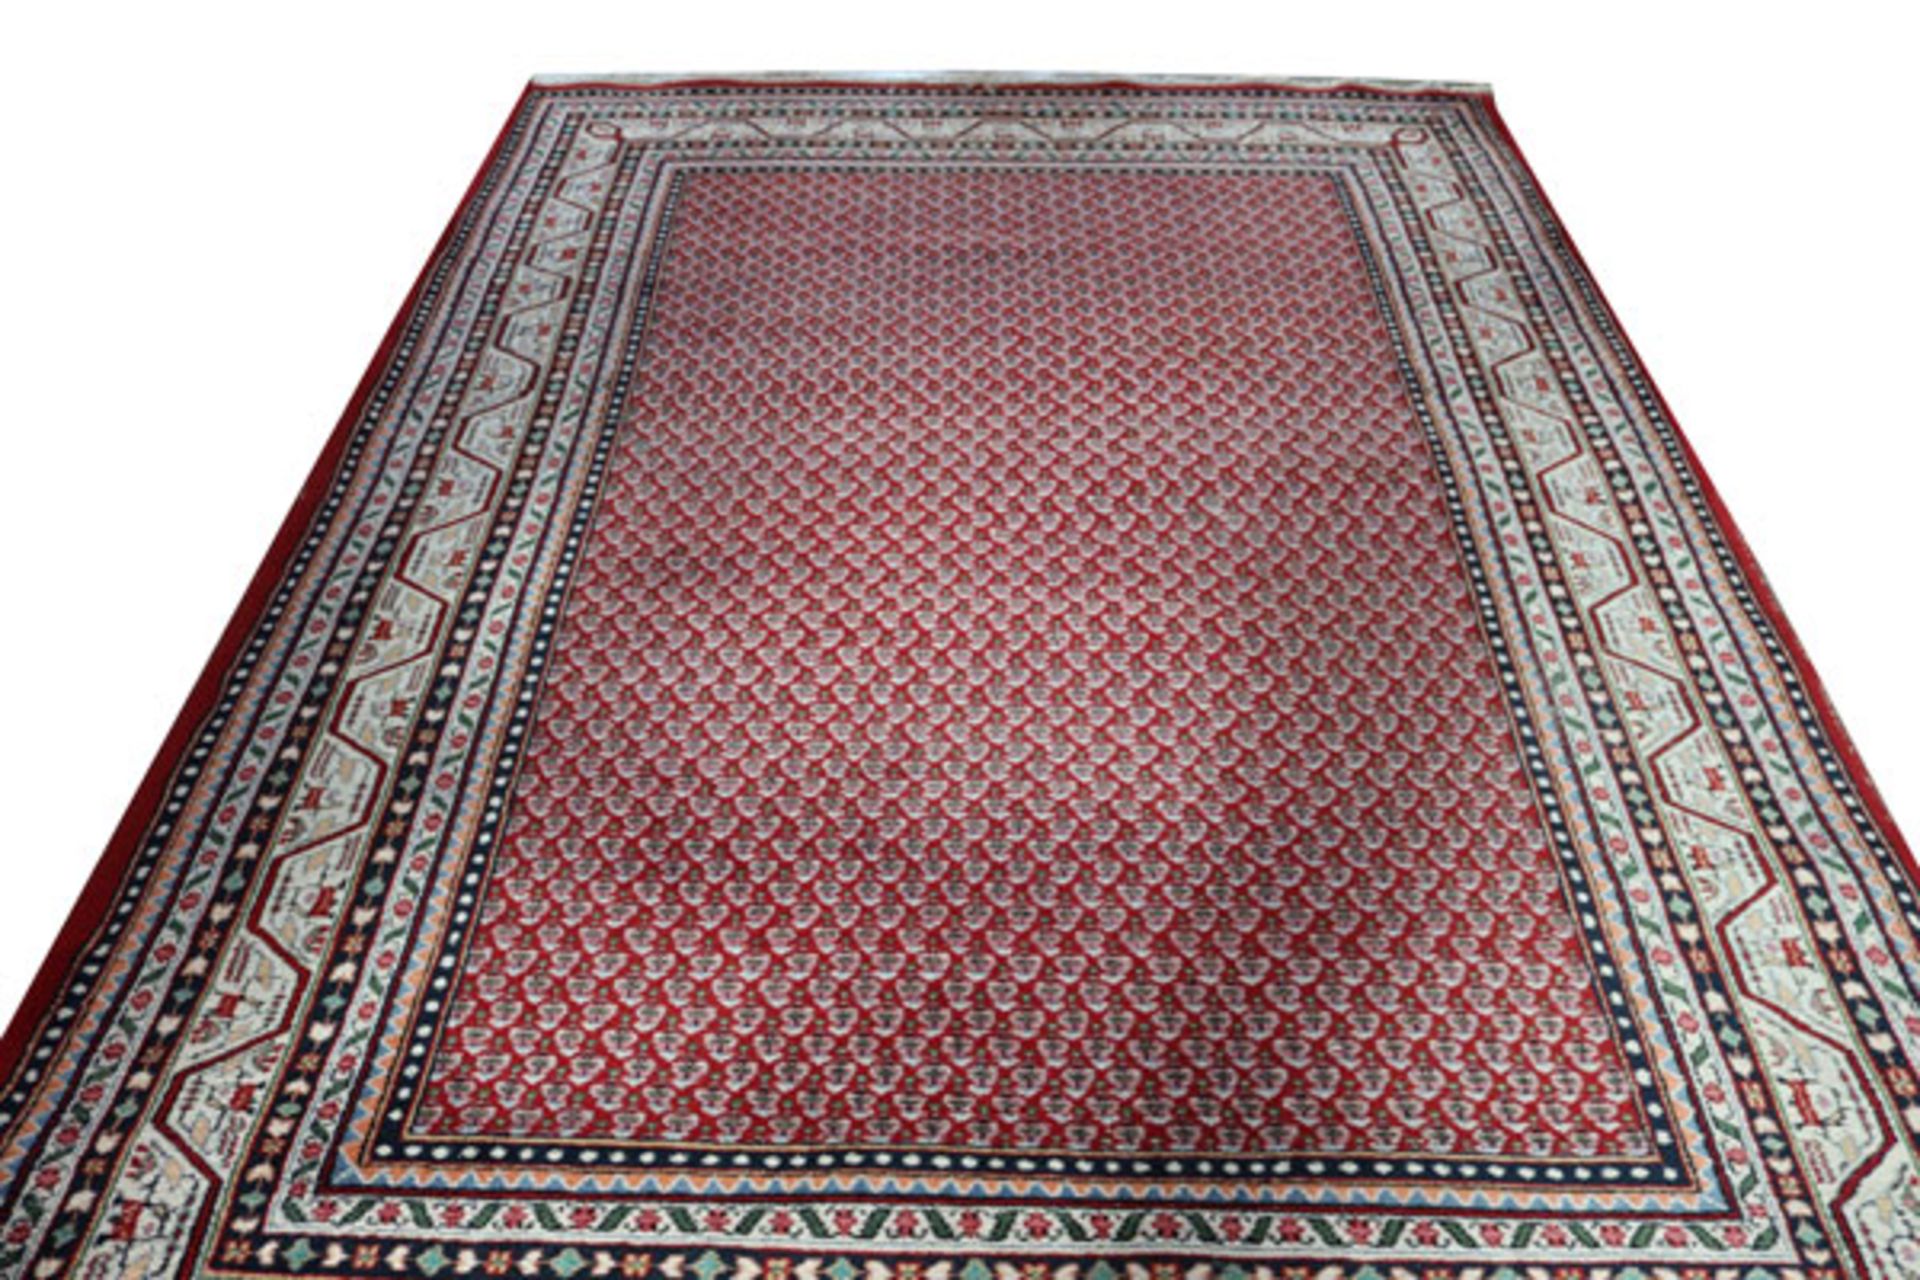 Teppich, Mir, rot/beige/bunt, Gebrauchsspuren, teils stark abgetreten, 306 cm x 211 cm